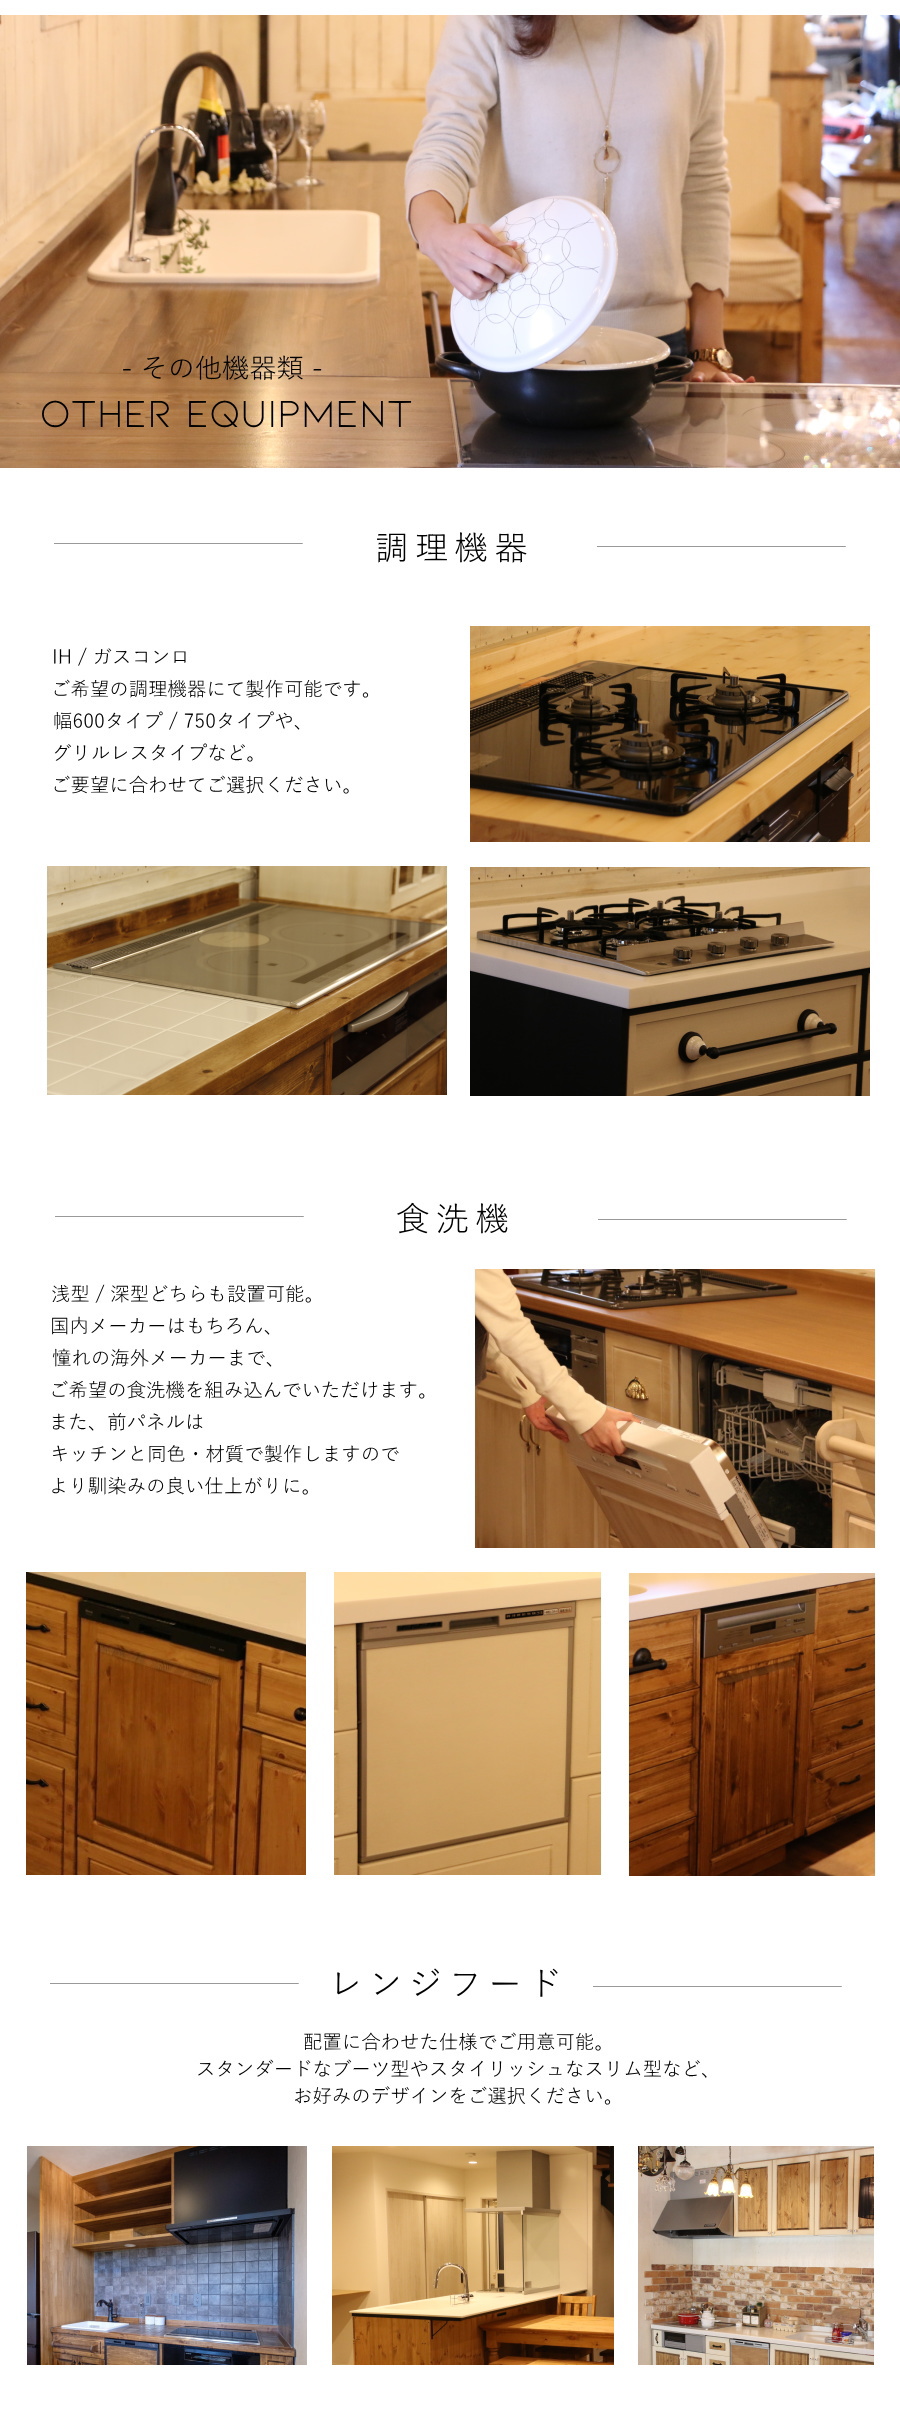 カントリー キッチン 30 オーダー家具 サイズ変更可能 北欧 無垢 木製 パイン材 収納 人造大理石 天板 ステンレス セラミックトップ - 47